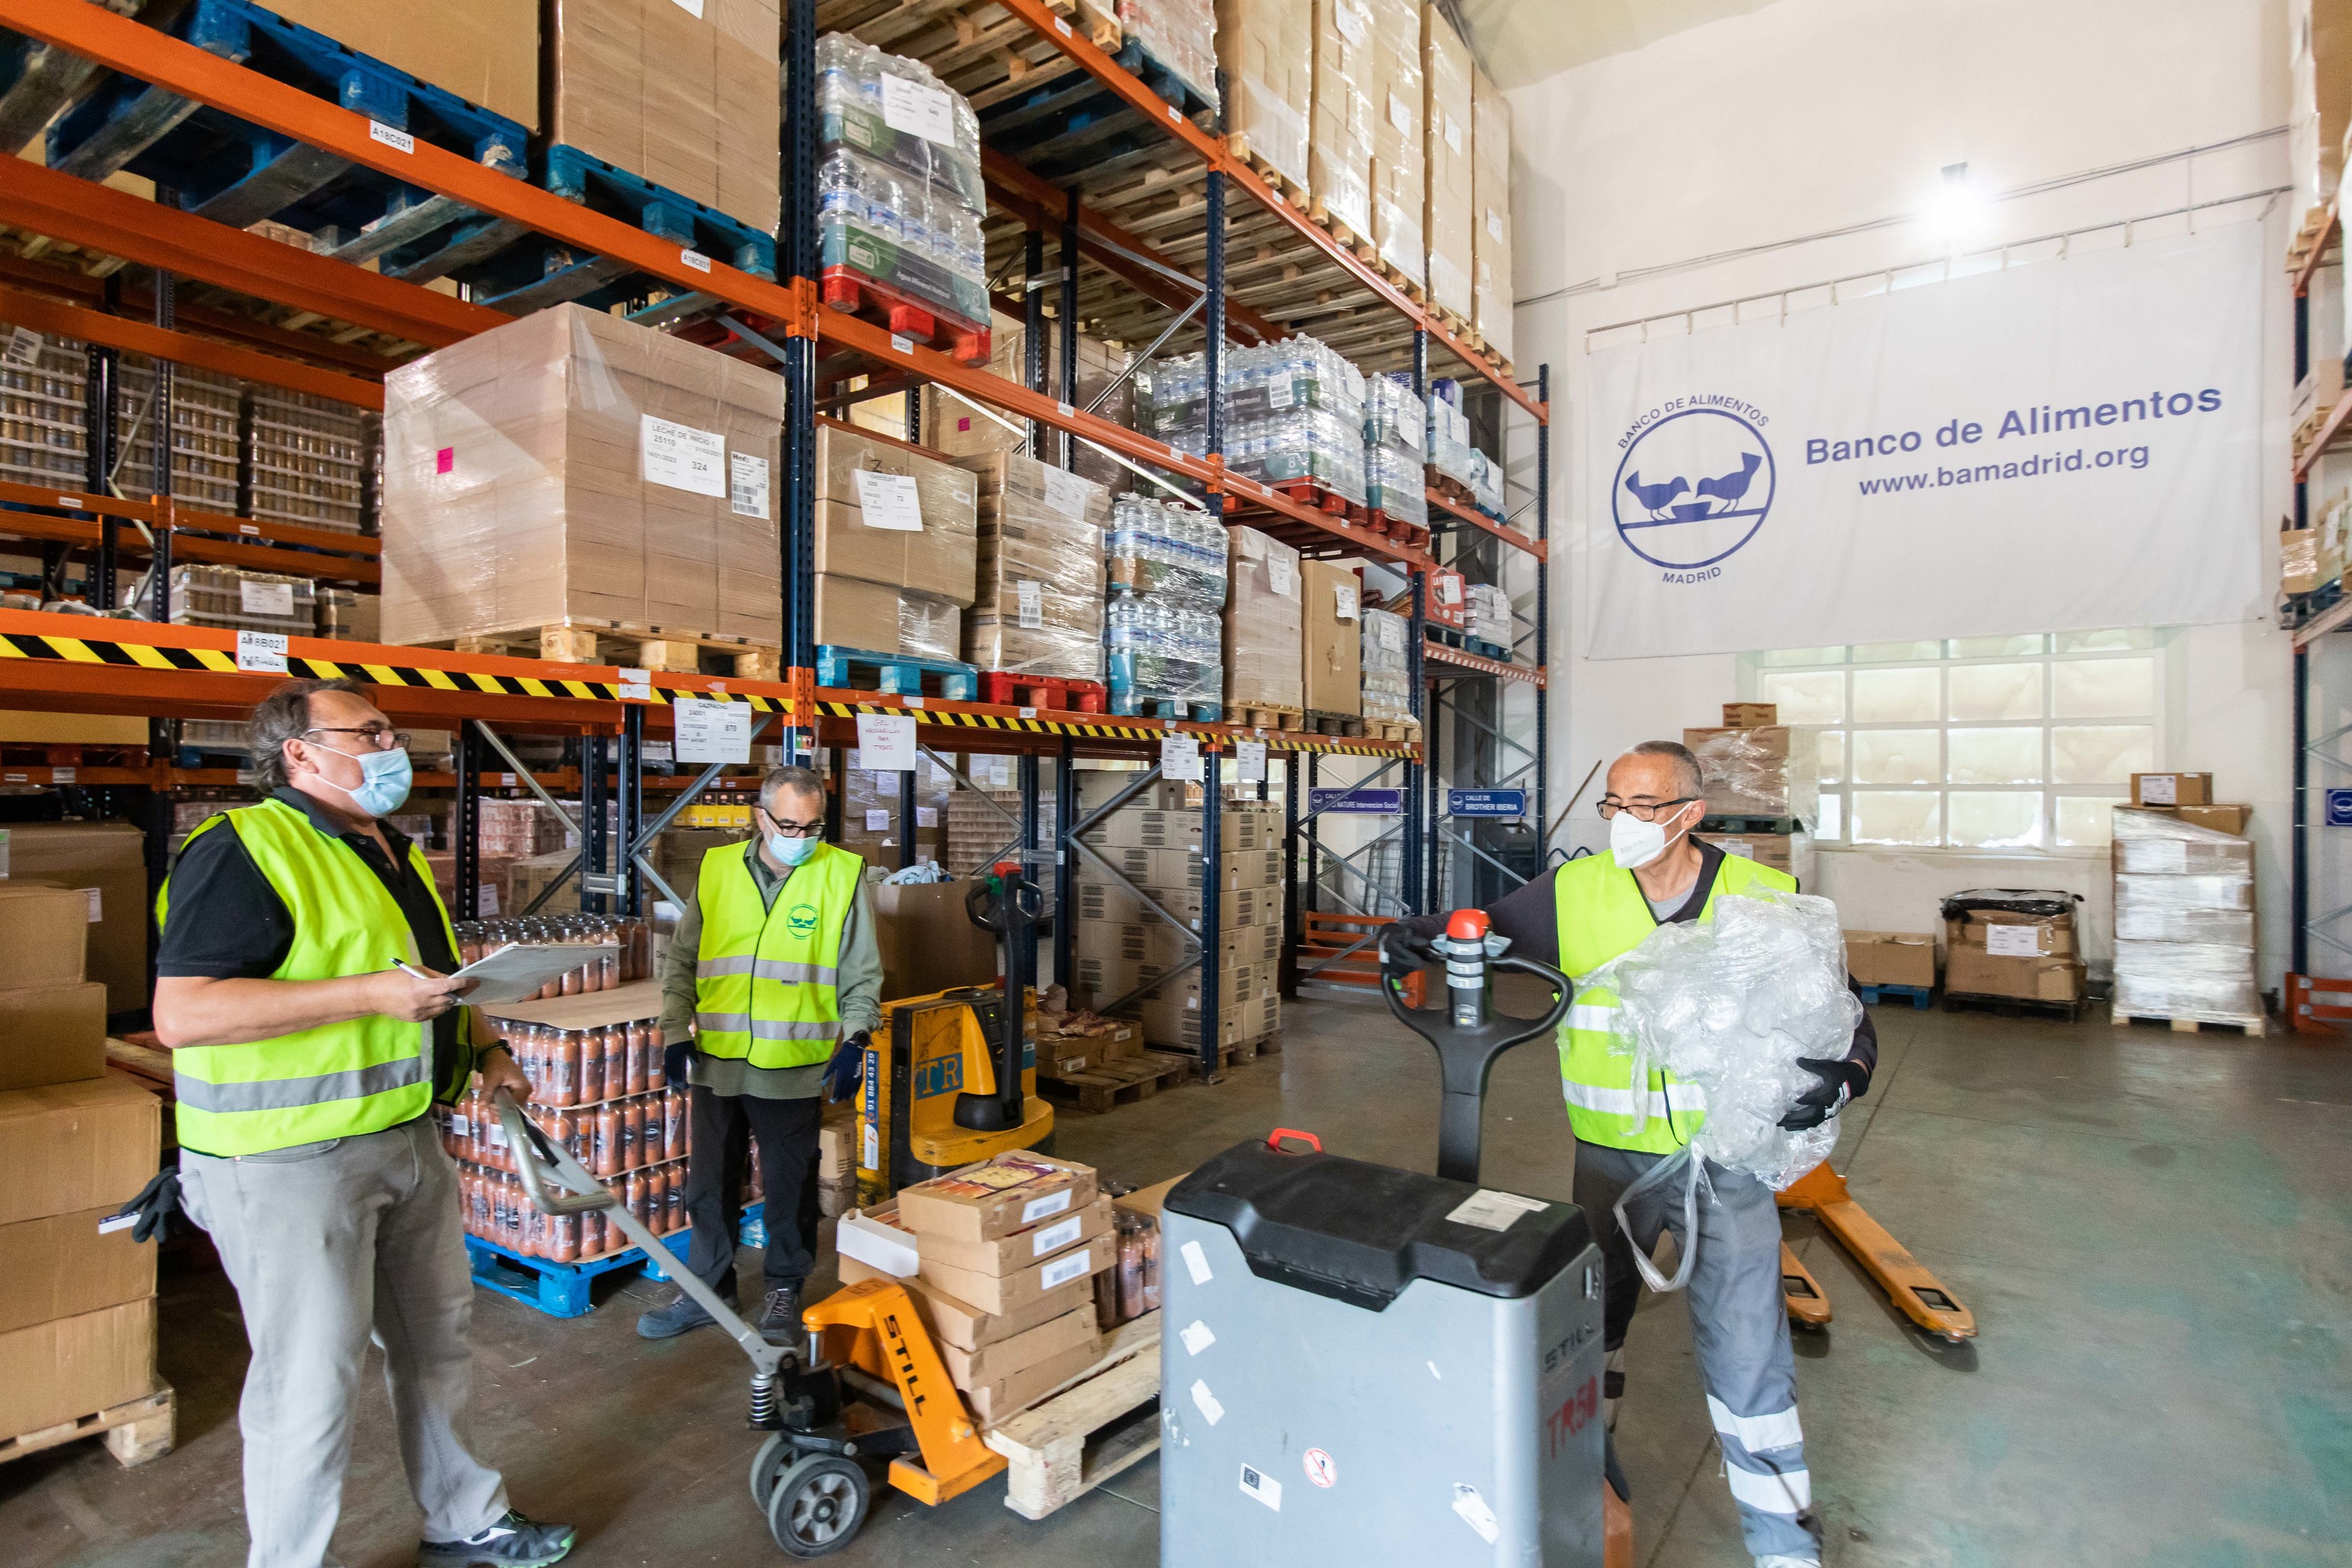 Voluntarios del Banco de Alimentos transportan alimentos para distribuirlos a las familias necesitadas